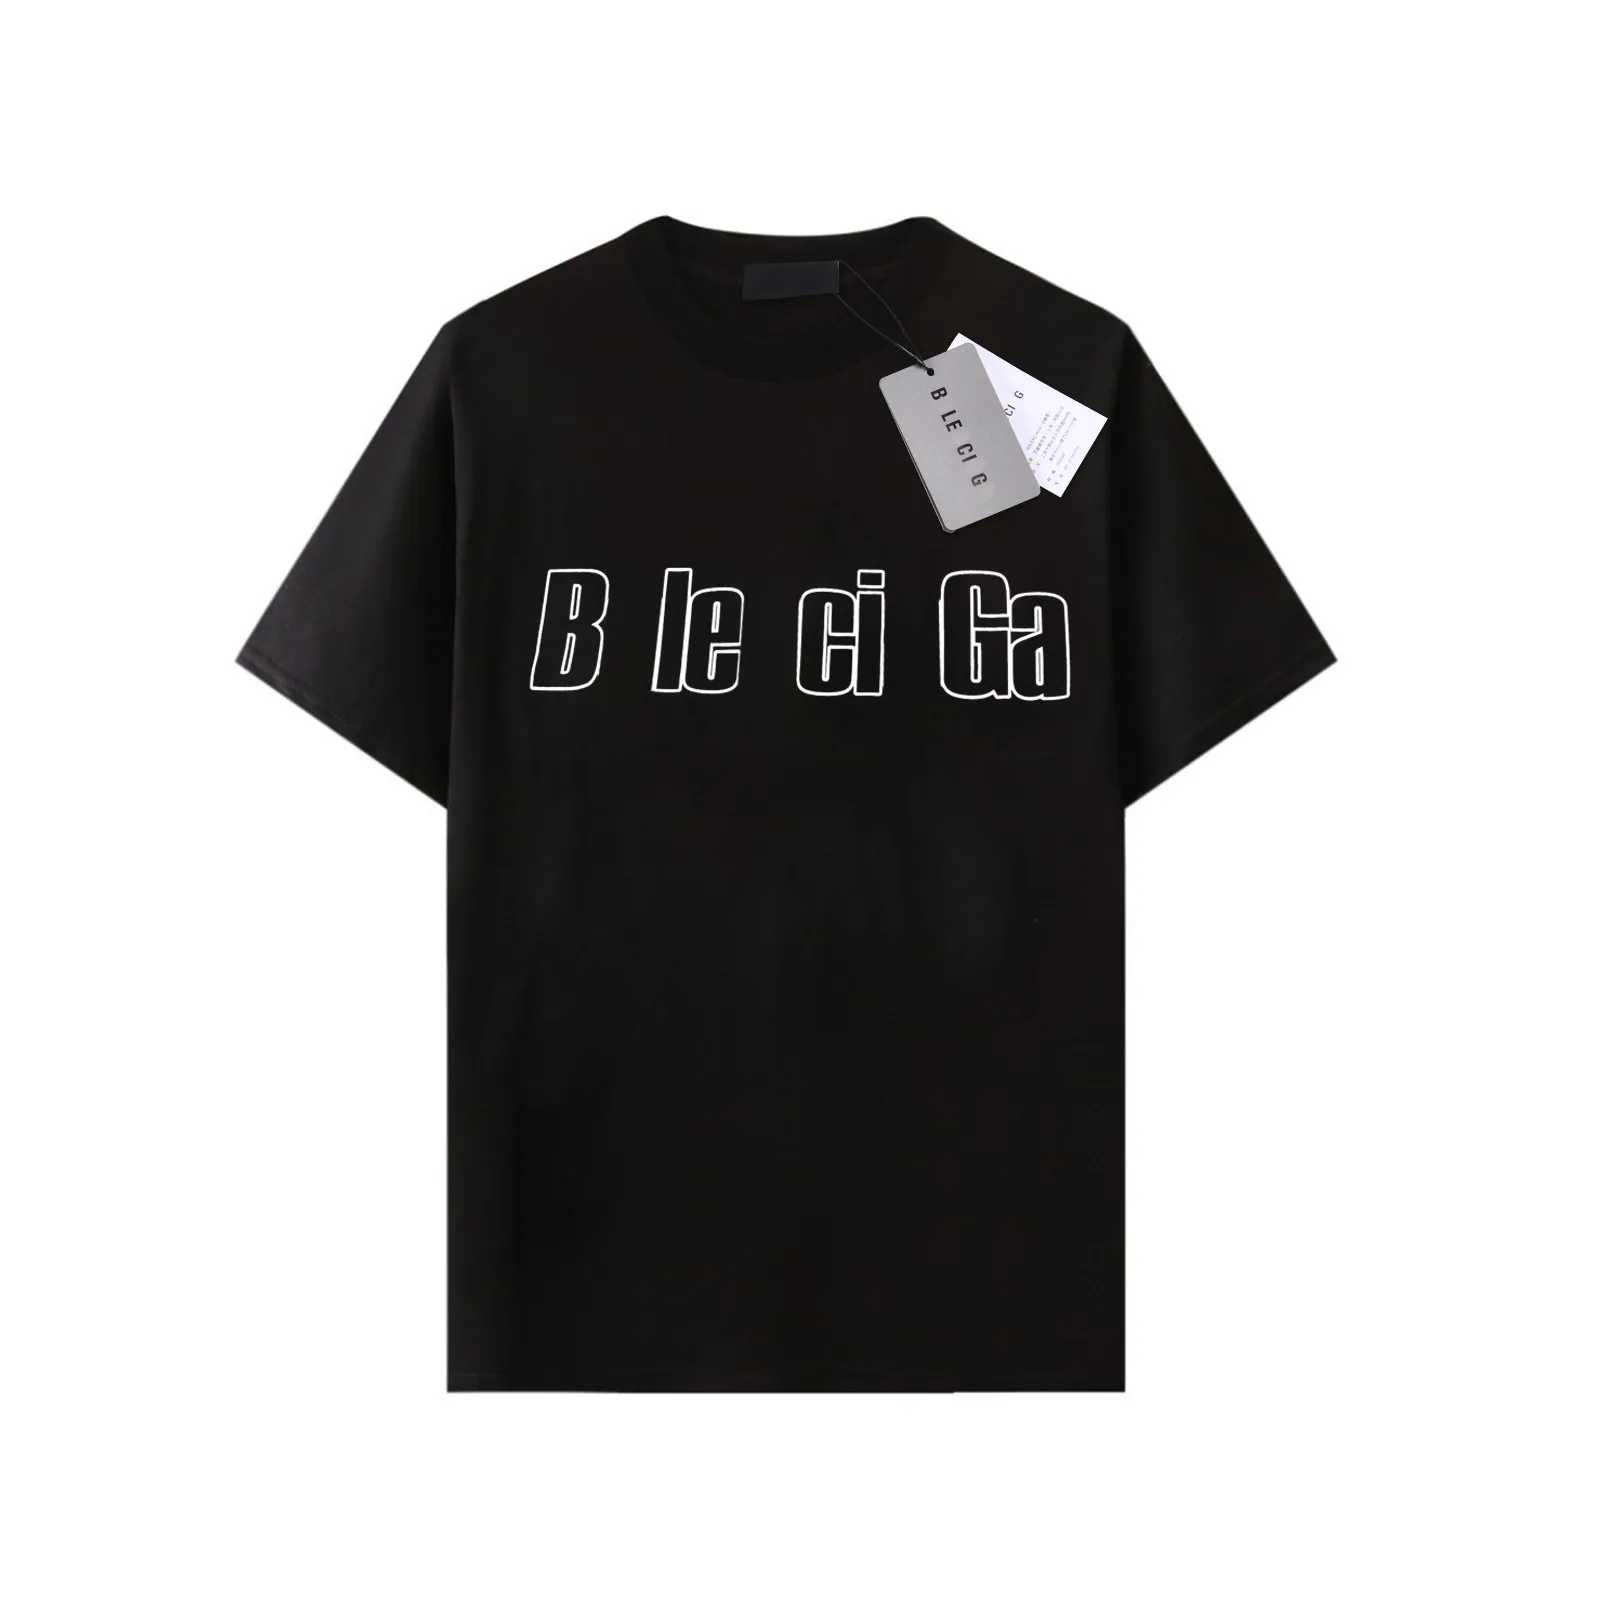 T-shirt firmata BA T Uomo Donna Manica corta T-shirt Camicie estive Hip Hop Streetwear Top Pantaloncini Abbigliamento Abbigliamento Vari colori-44